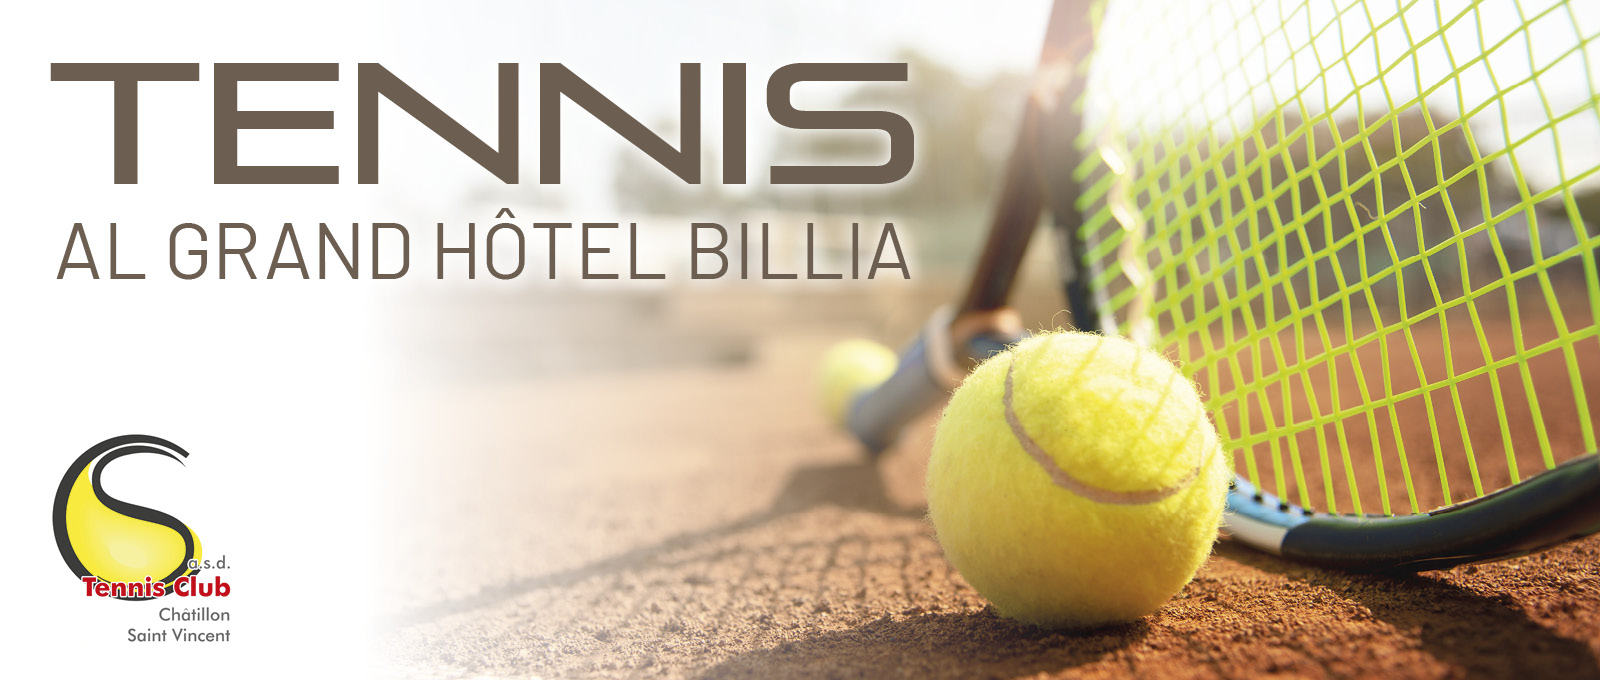 TENNIS AL GRAND HOTEL BILLIA